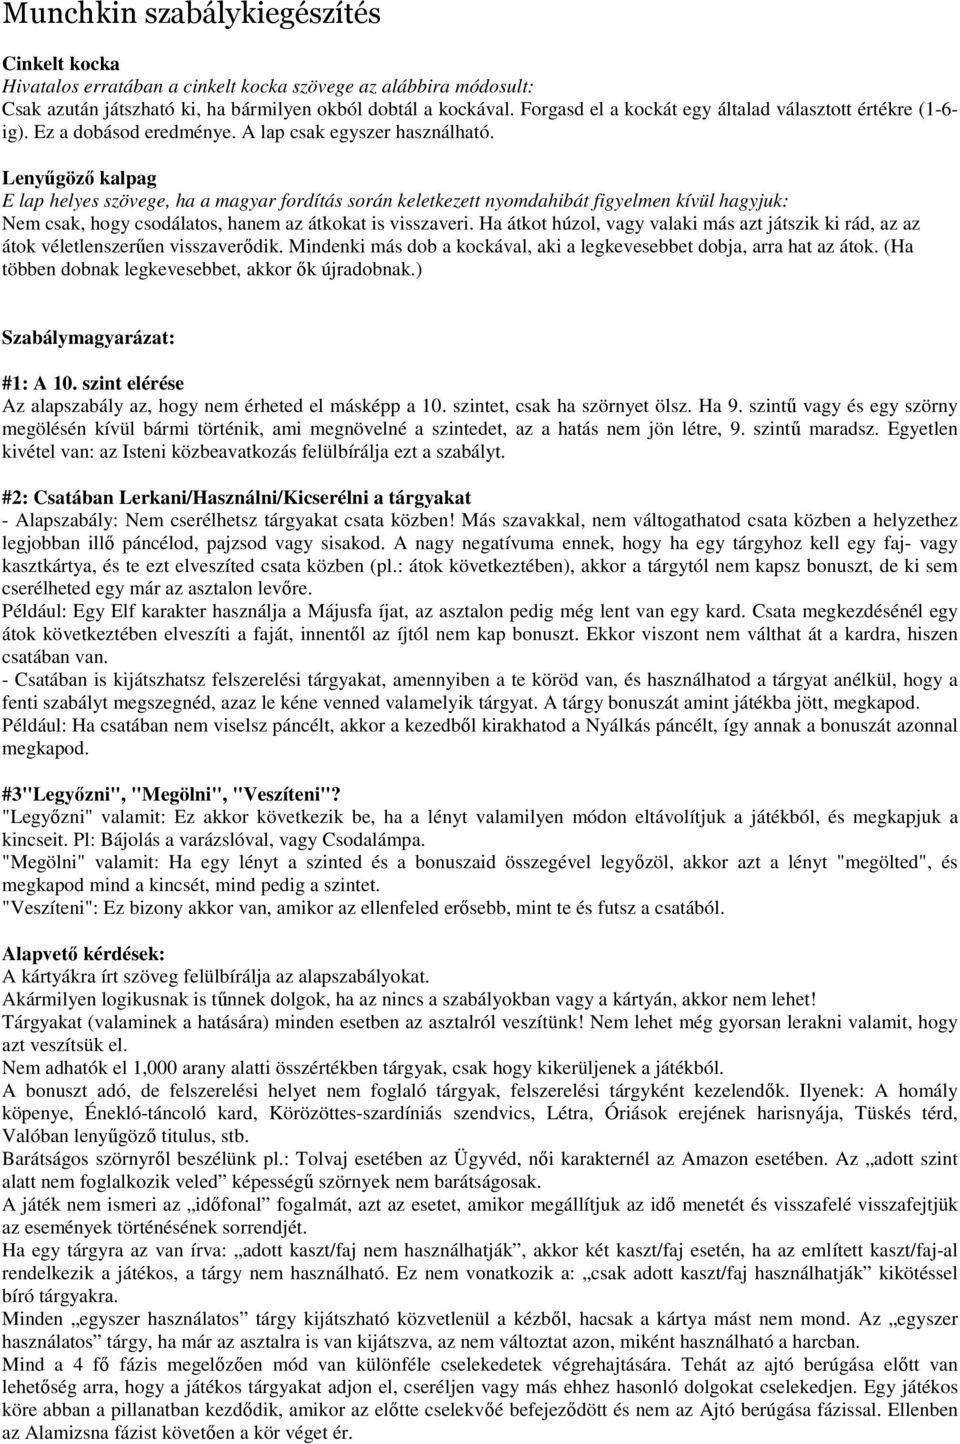 Munchkin szabálykiegészítés - PDF Ingyenes letöltés